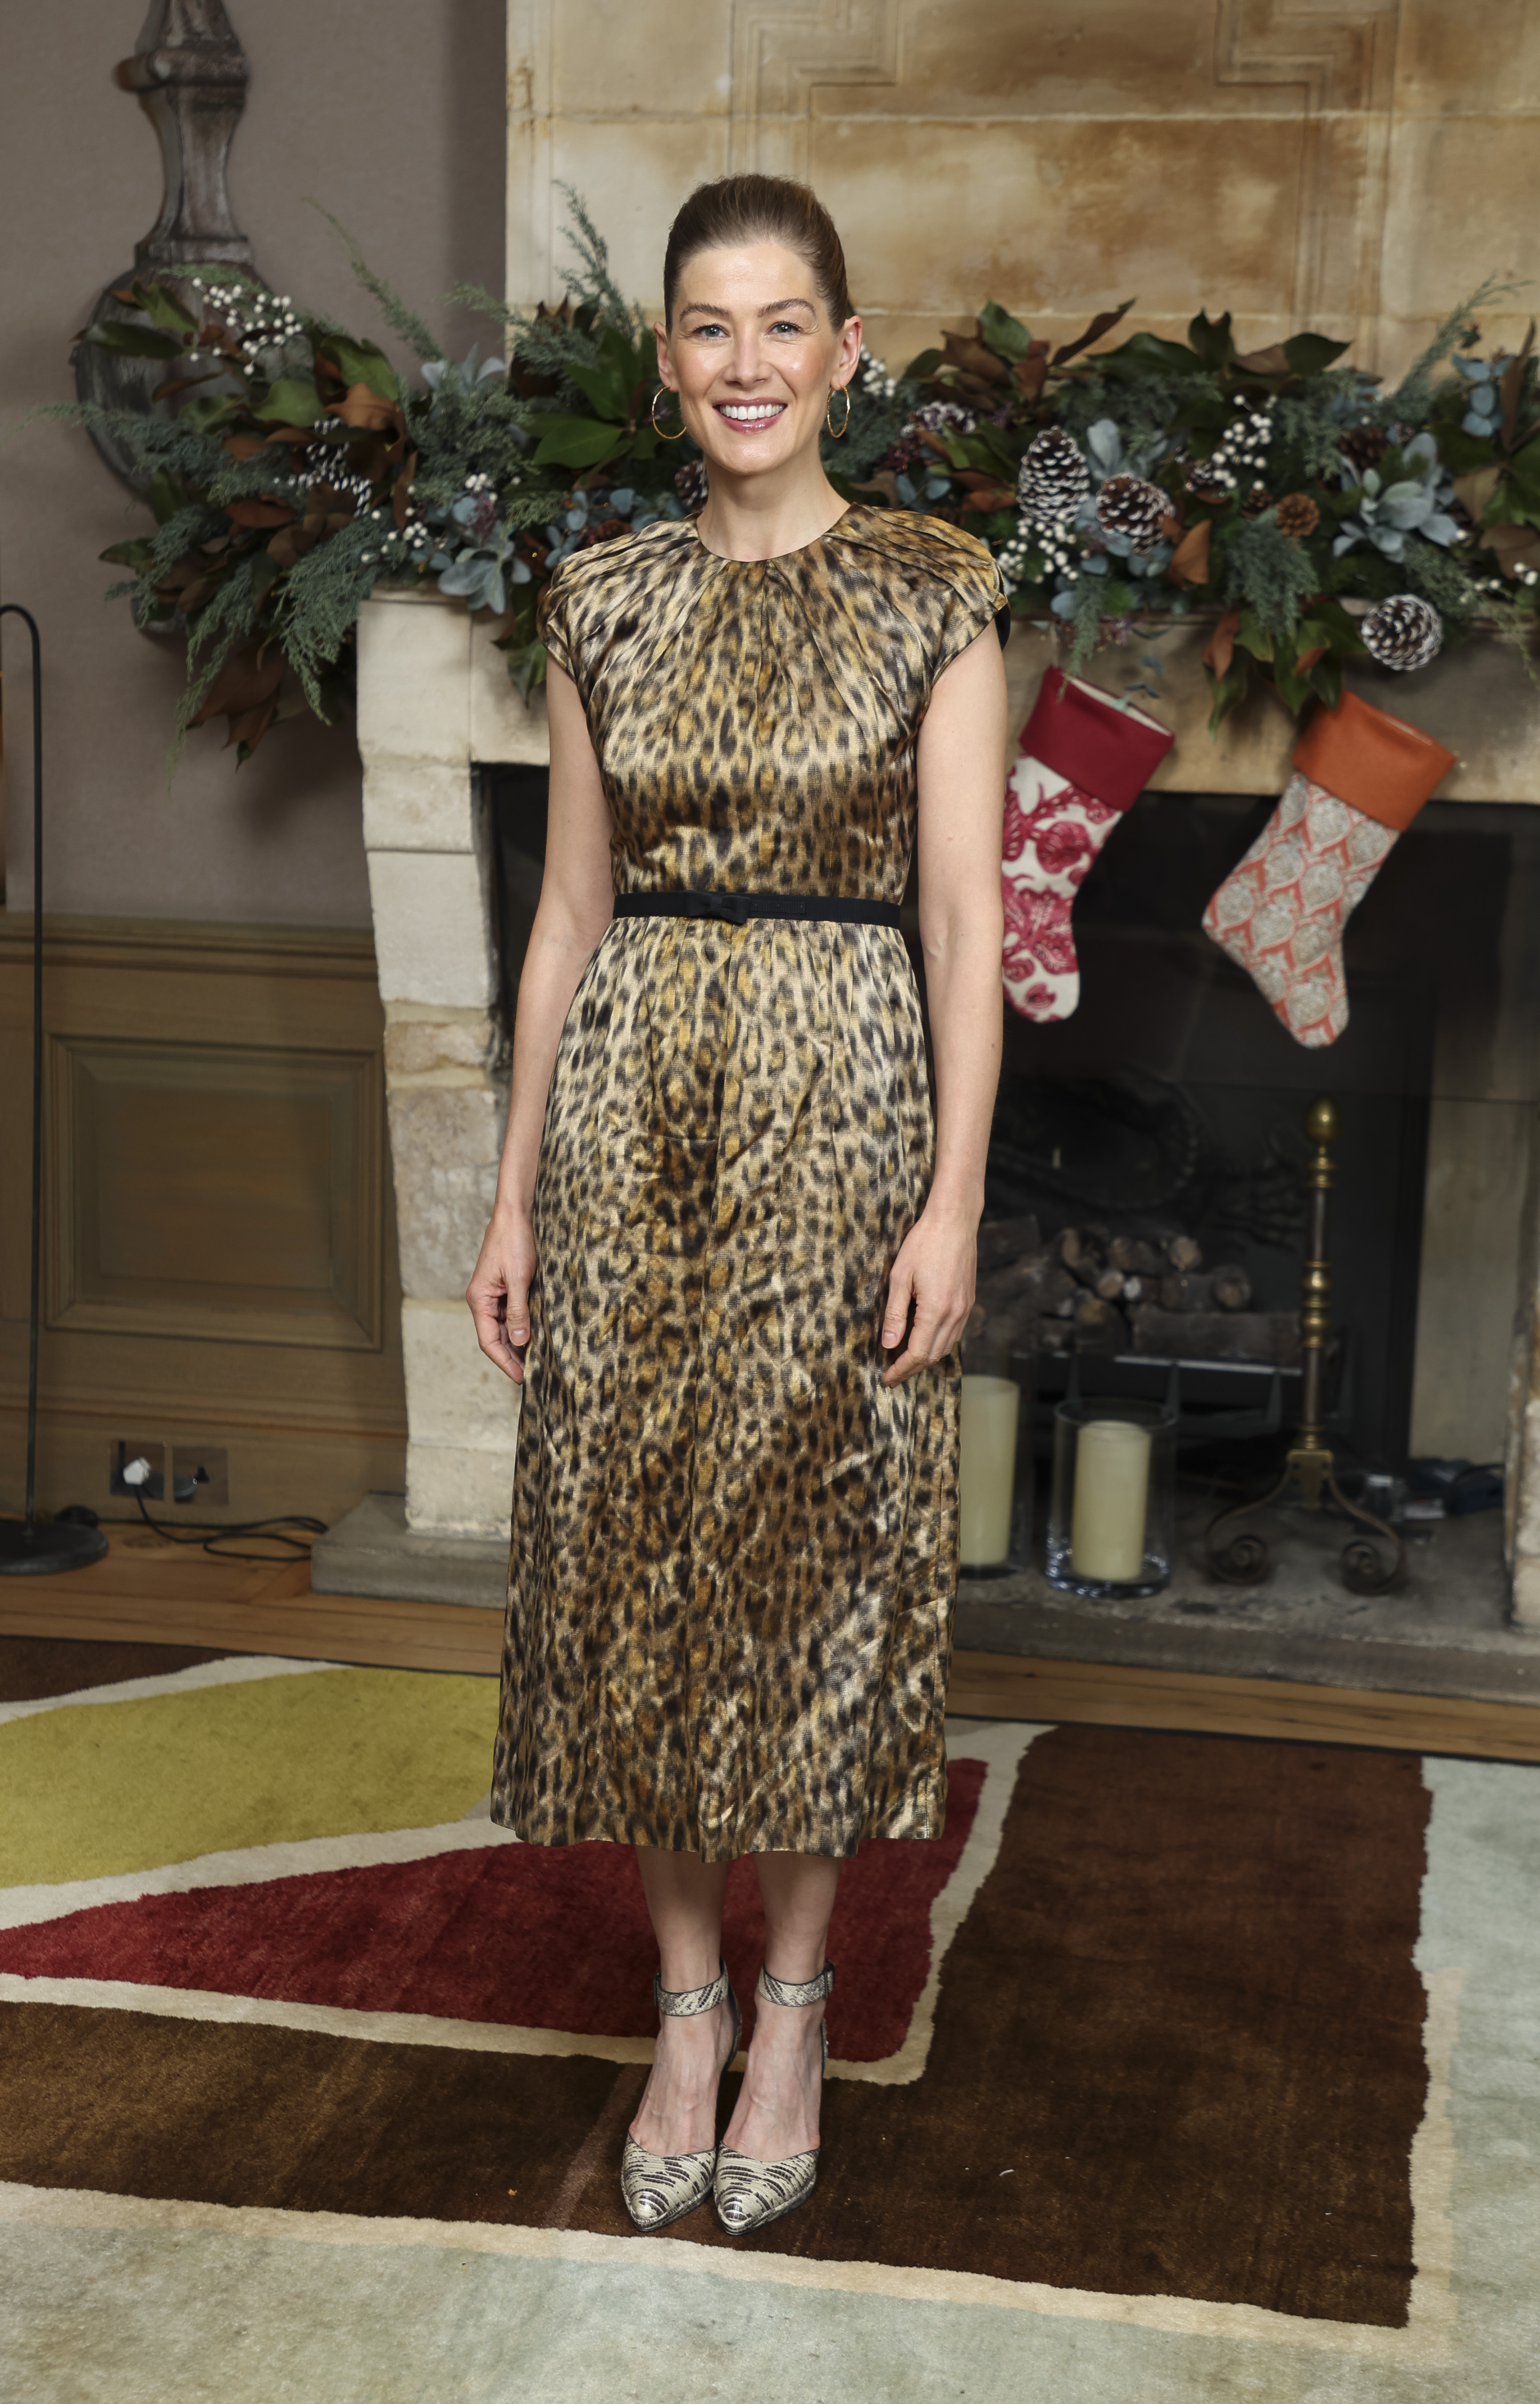 Die elegante britische Schauspielerin Rosamund Pike im Leopardenmuster zeigt, wie einflussreich der Trend bei A-Prominenten ist